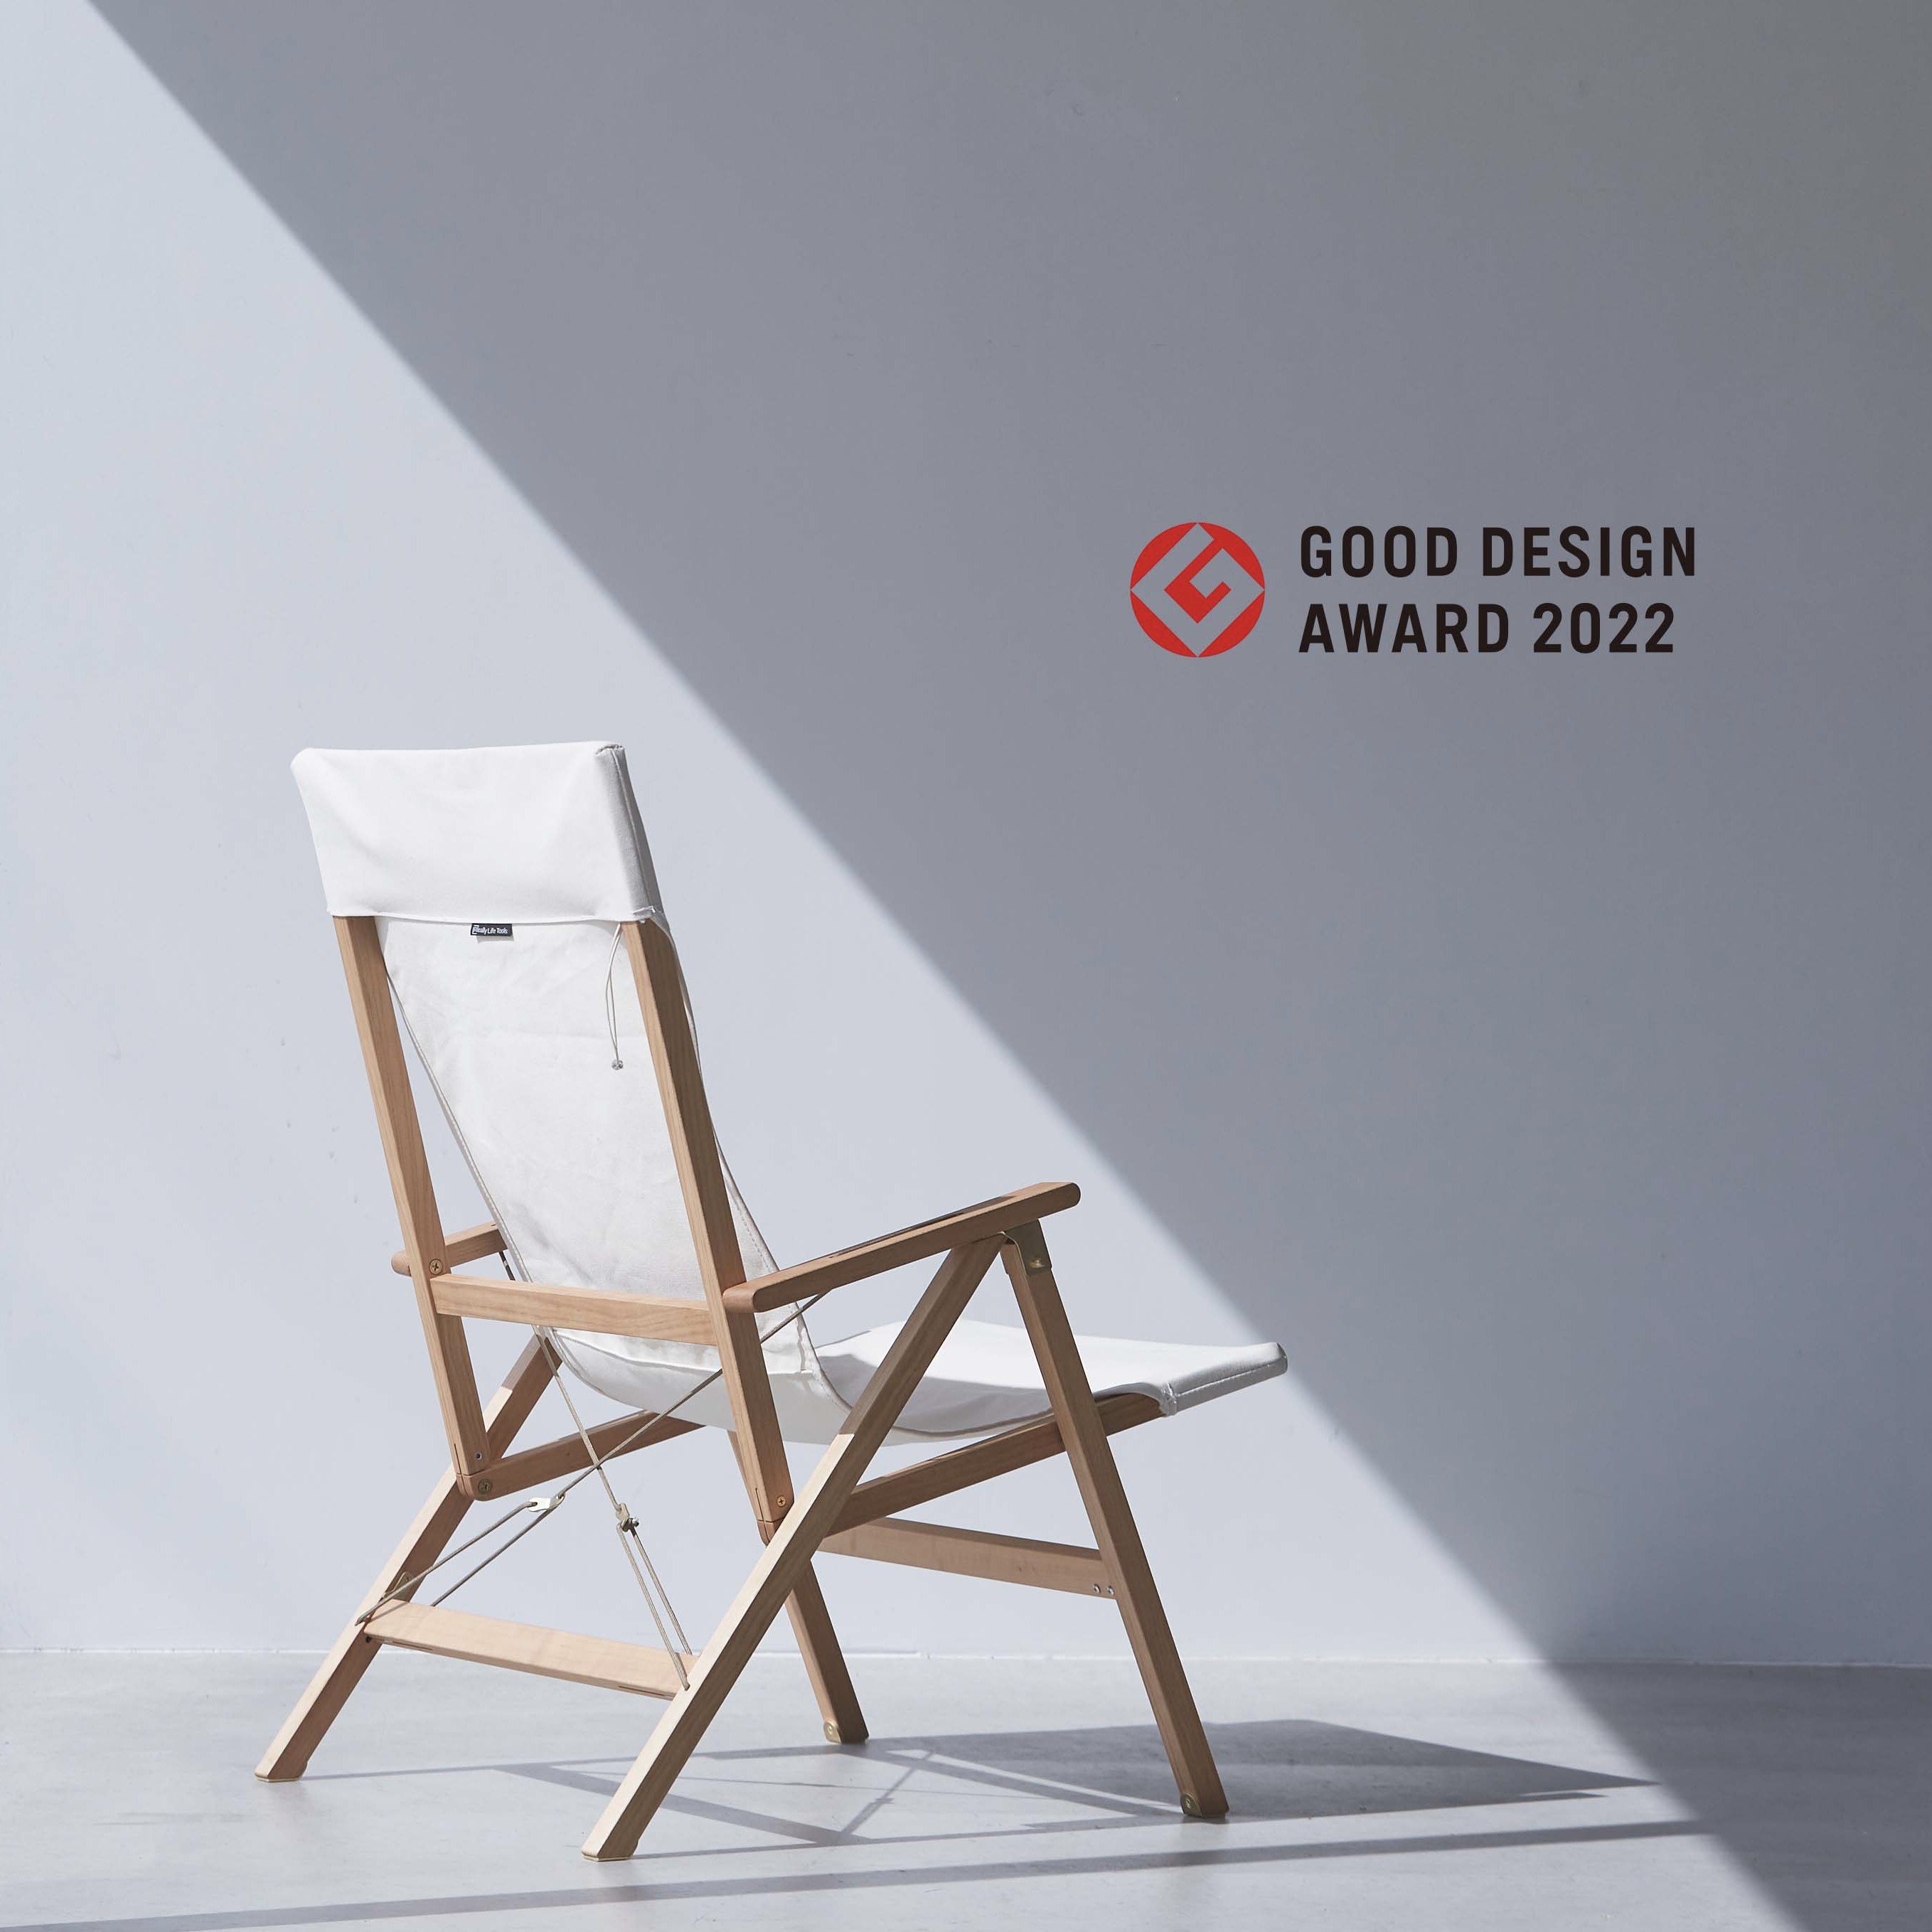 2022年10月7日(金) 【RLT Chair】「2022年度グッドデザイン賞」を受賞しました。